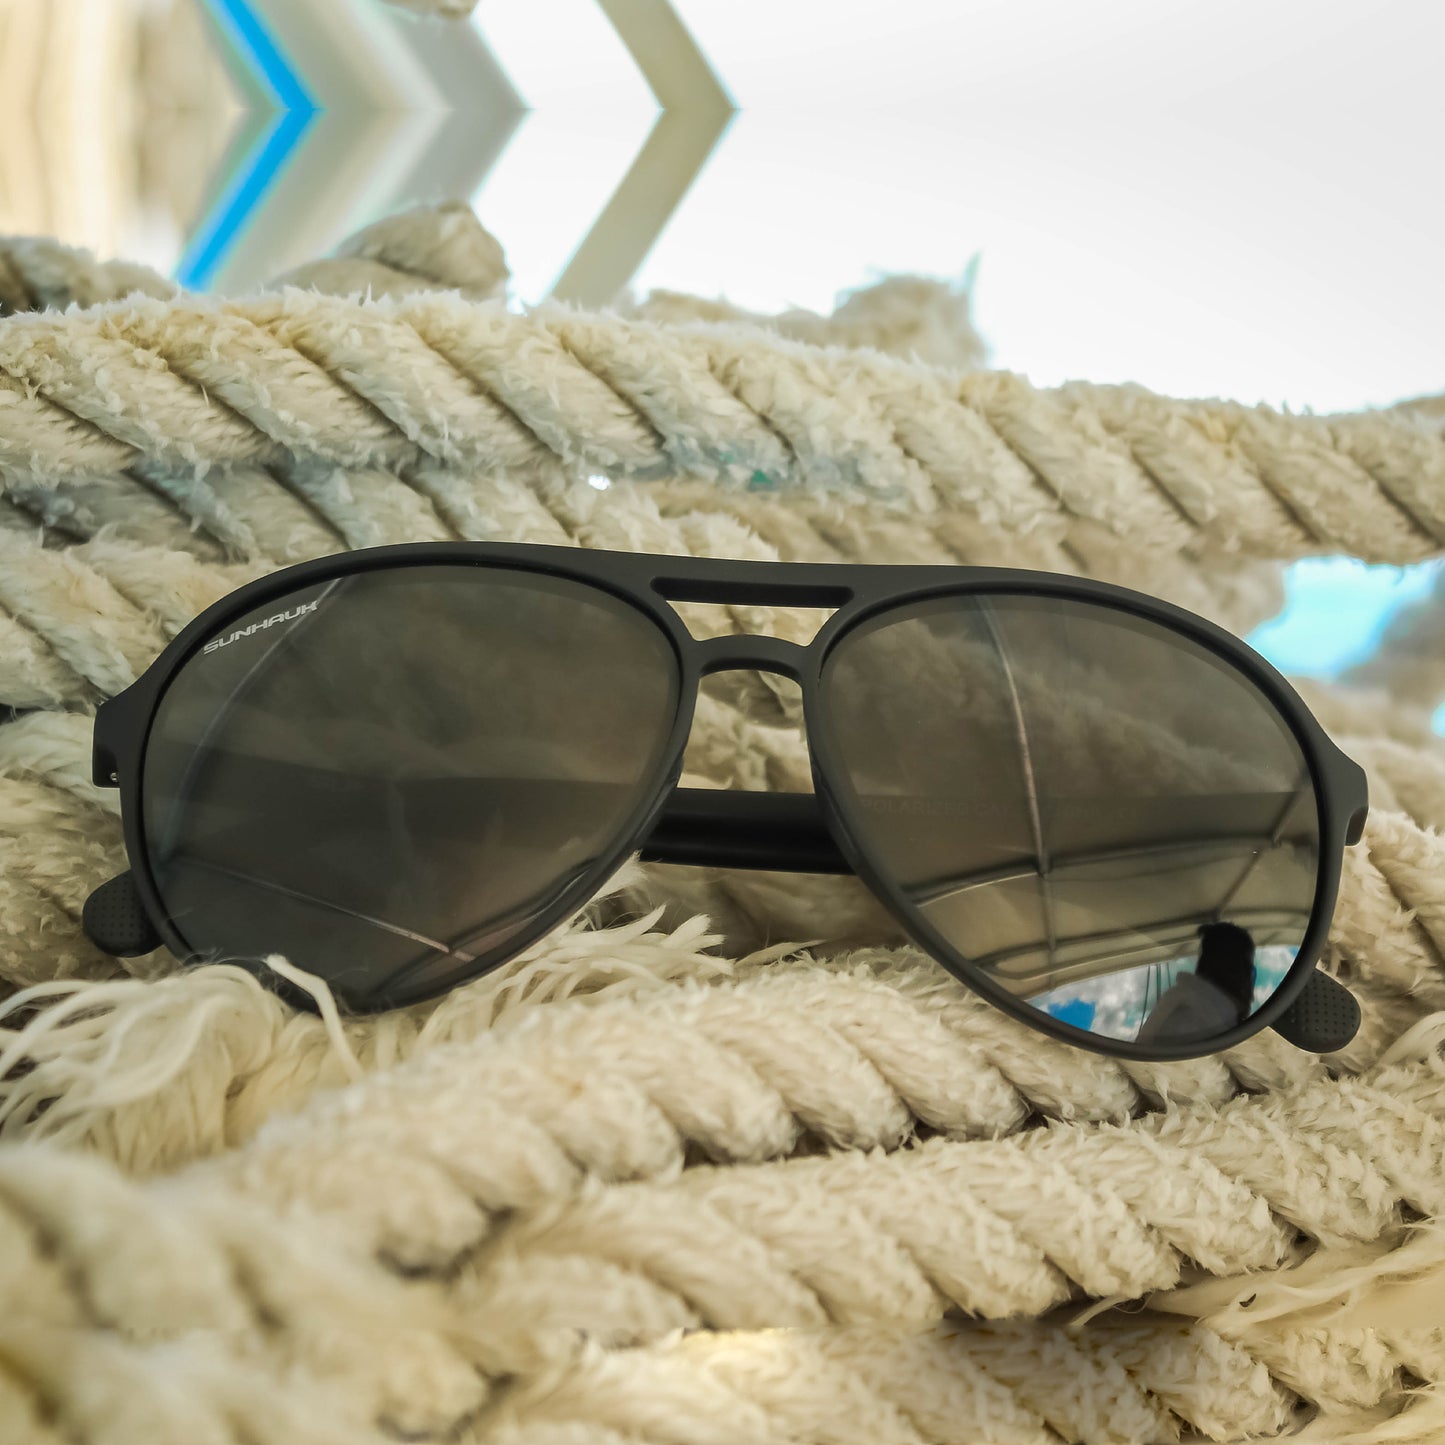 Carbon Quest - Black Sunglasses For Men | SUNHAUK